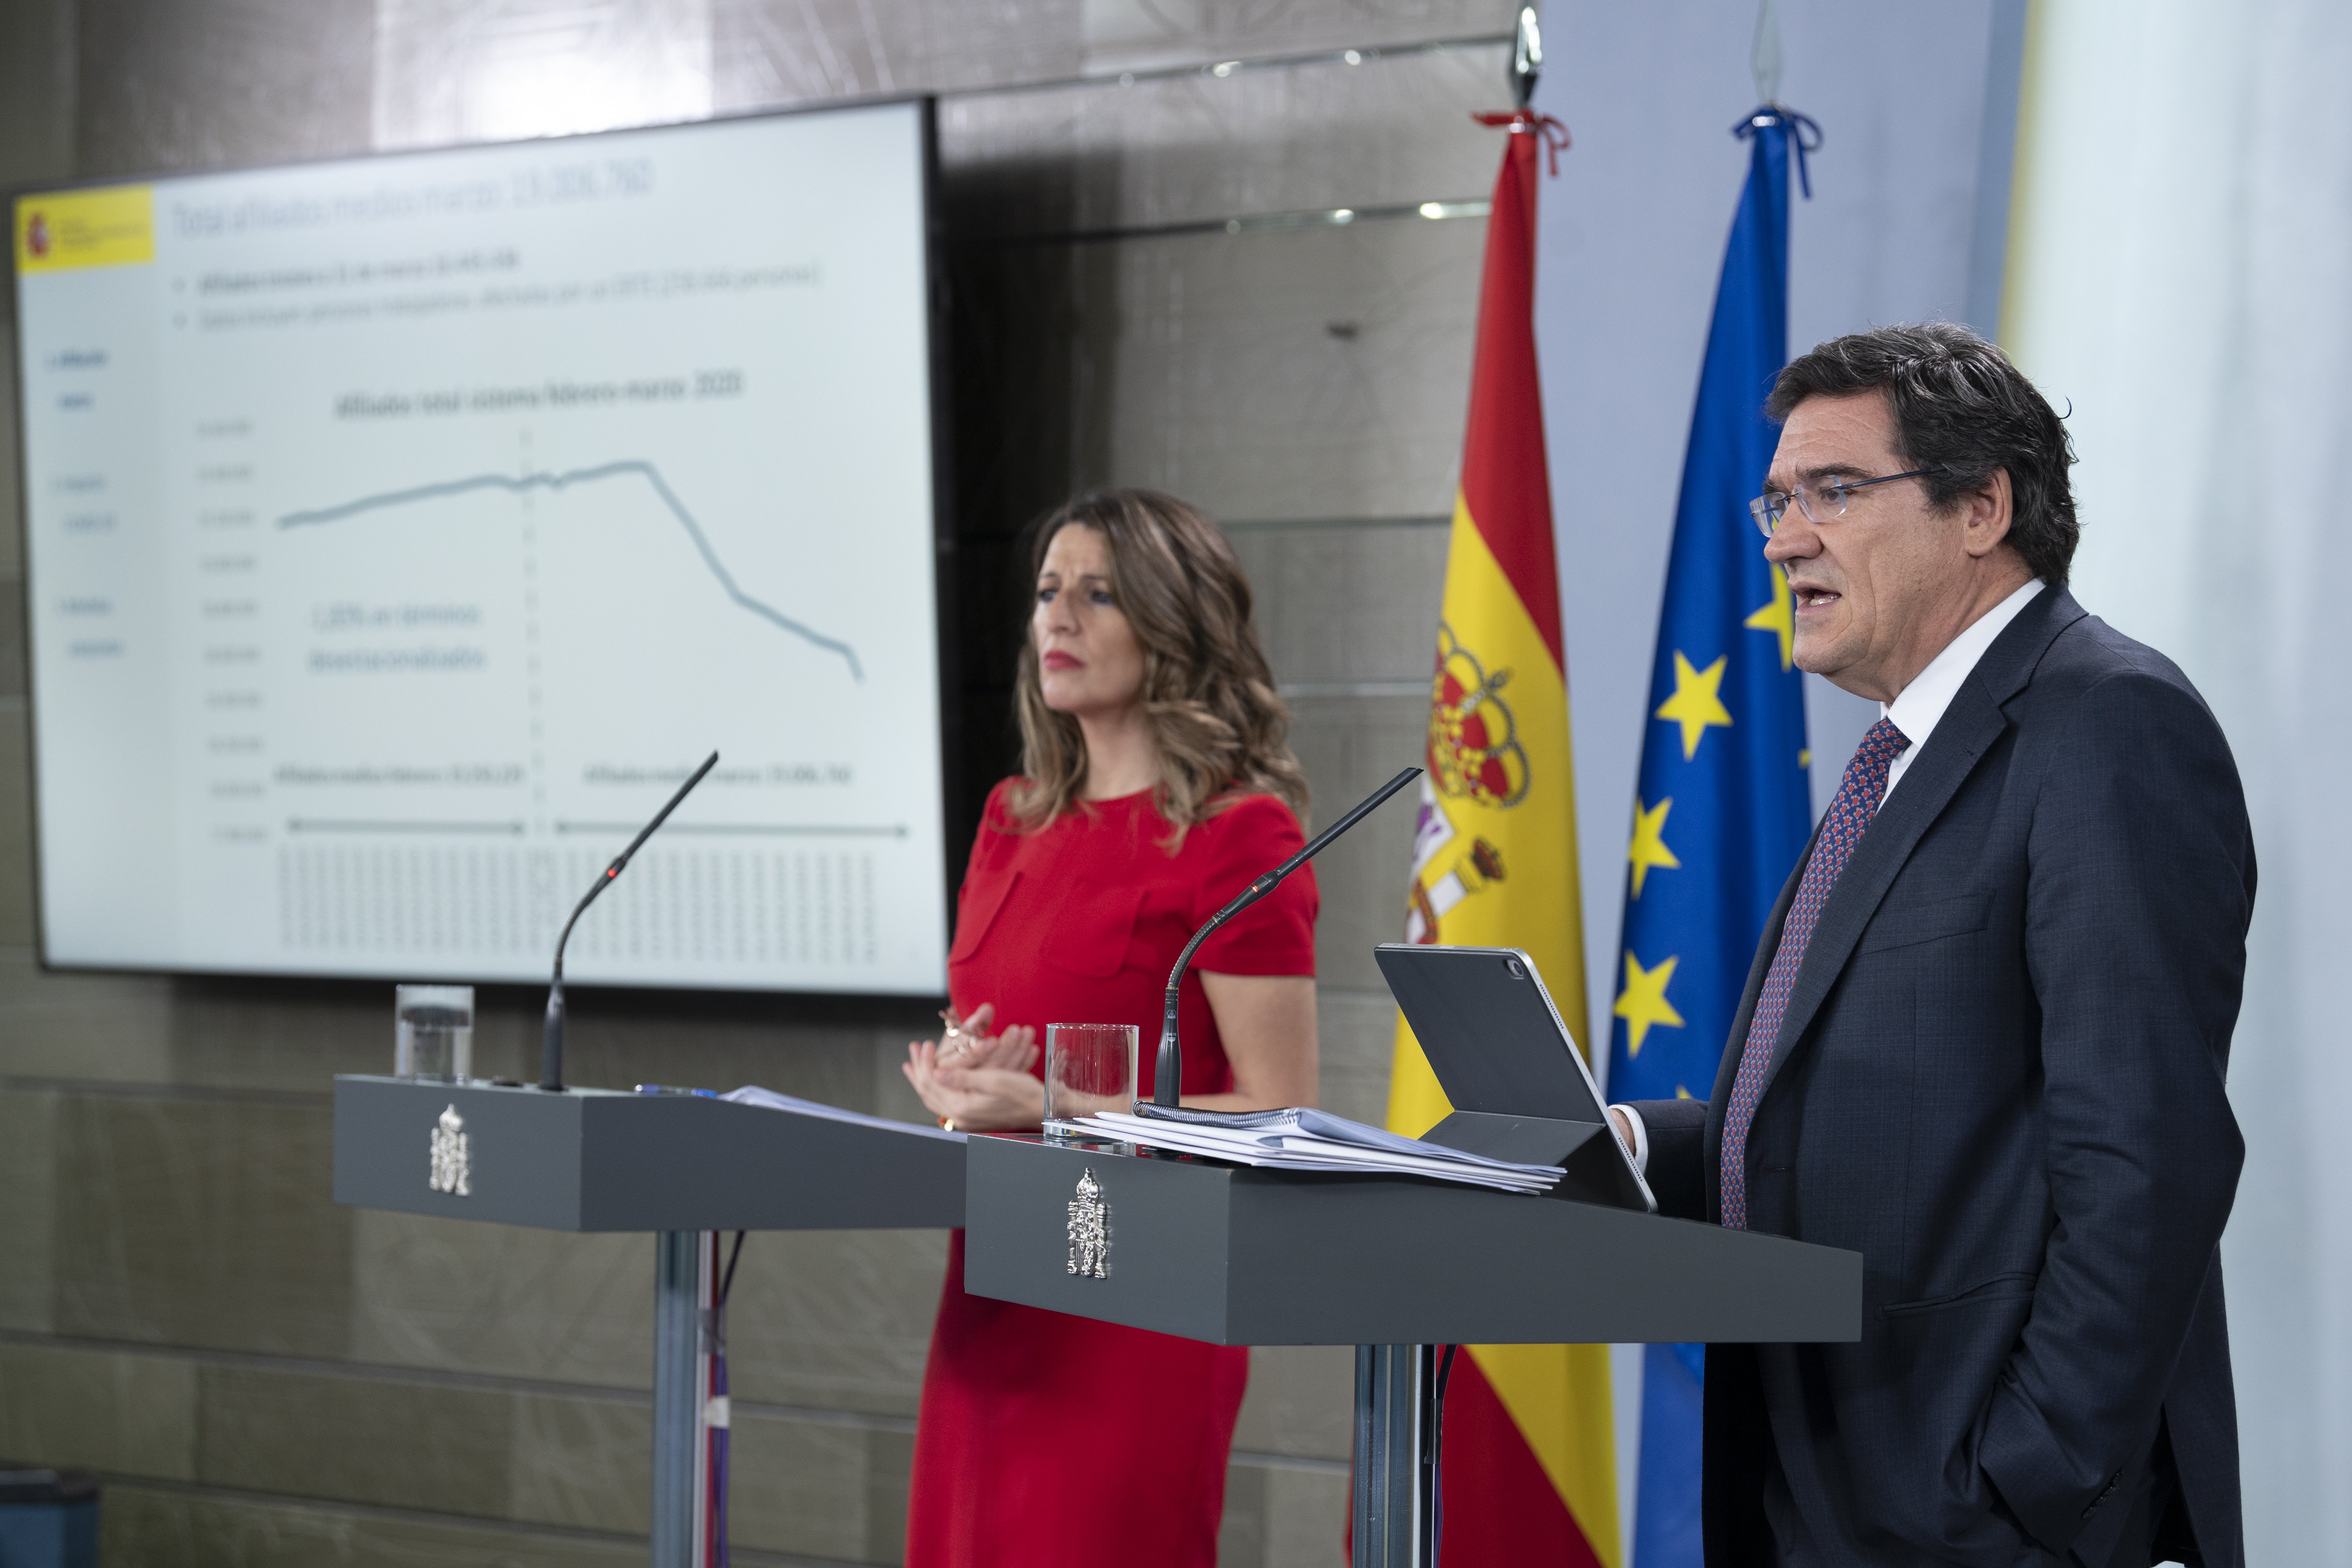 El govern espanyol treballa per aprovar la renda mínima "al més aviat possible"